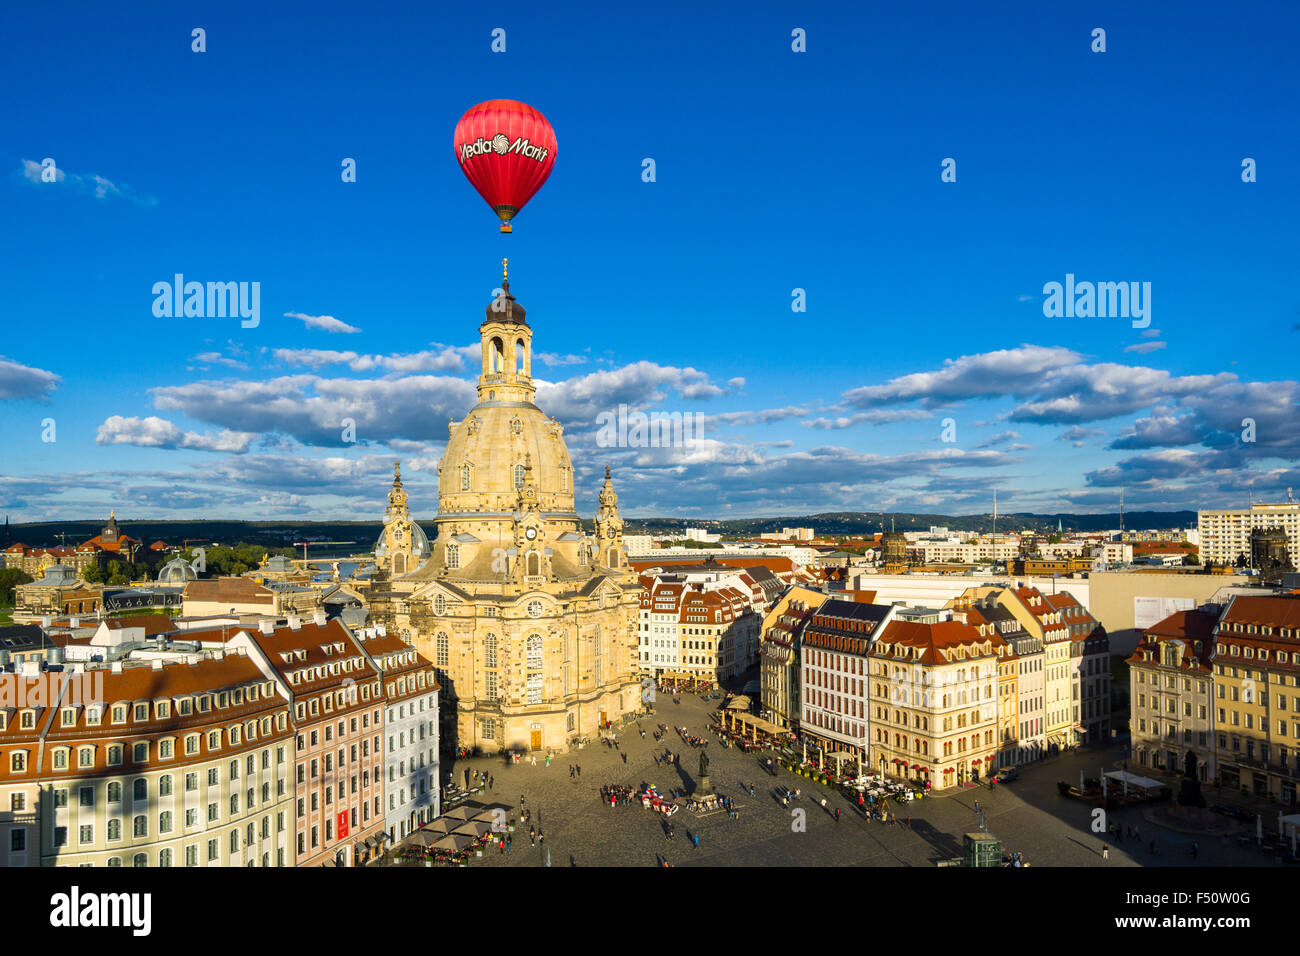 Une vue panoramique sur la neumarkt et l'église église notre dame dans la vieille partie de la ville, un ballon rouge n'est pas Banque D'Images